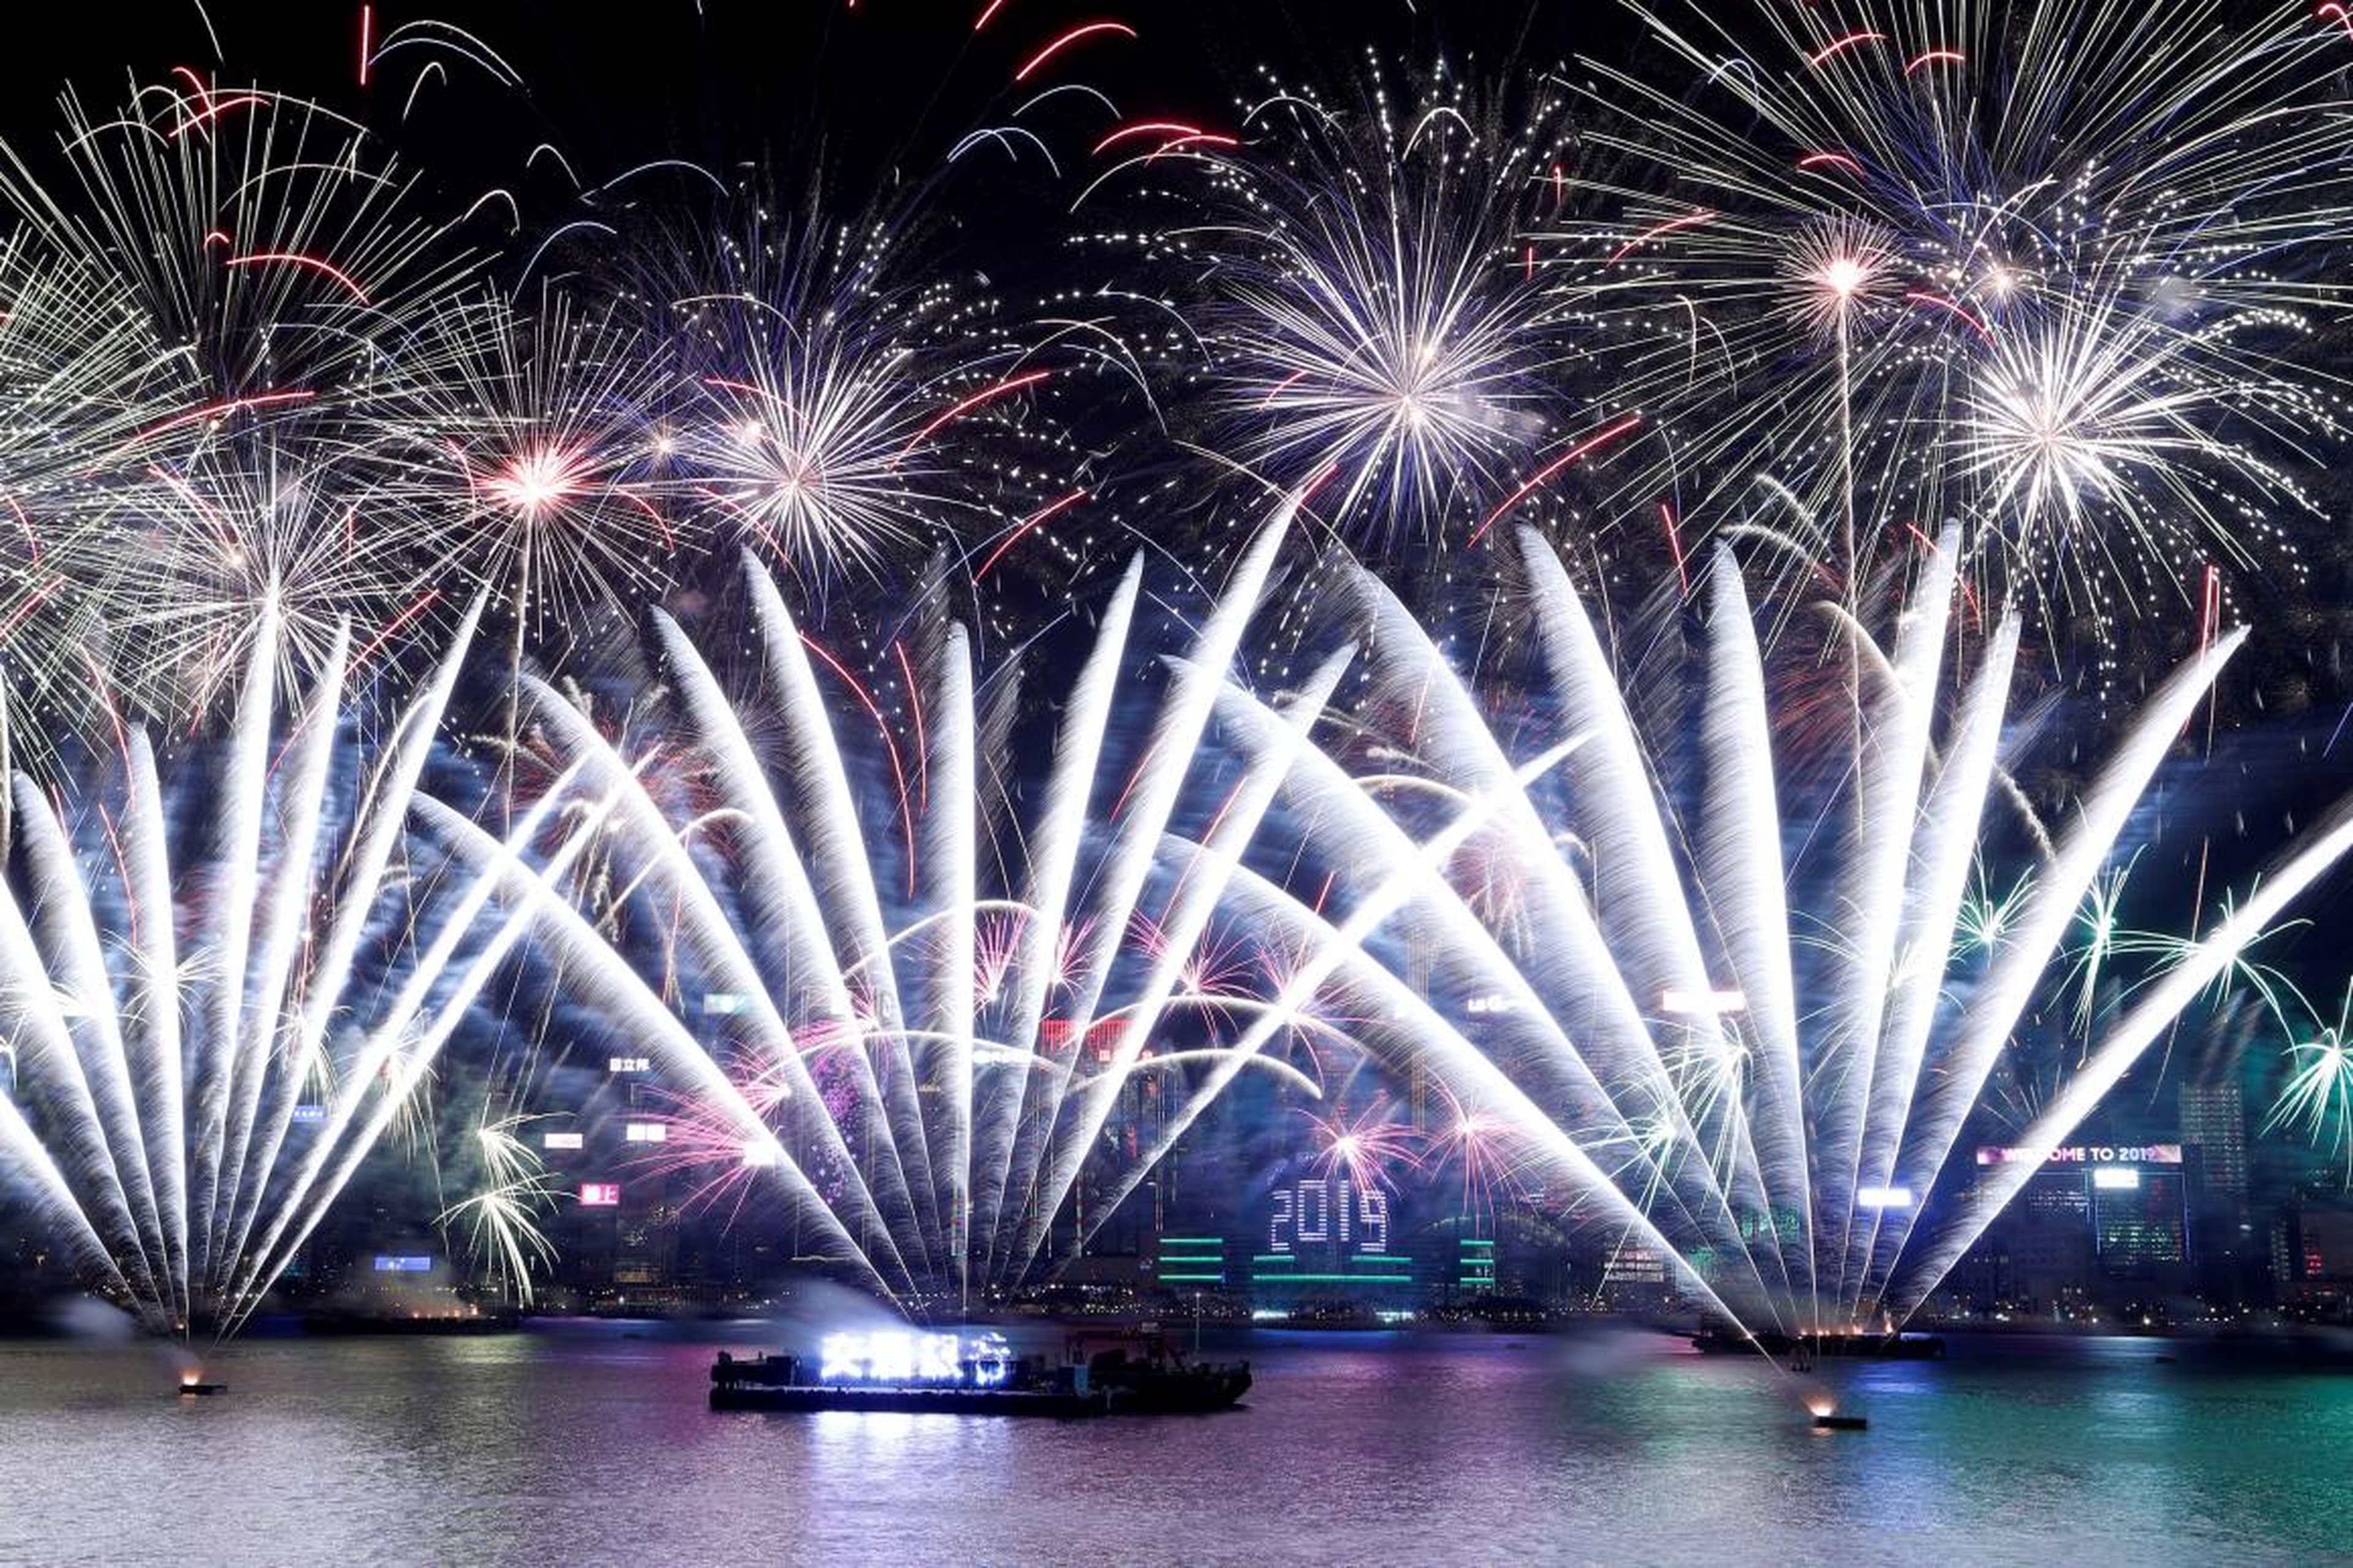 Fuegos artificiales sobre Victoria Harbour y el Centro de Convenciones y Exposiciones de Hong Kong durante un espectáculo pirotécnico para celebrar el Año Nuevo en Hong Kong, China, el 1 de enero de 2019.